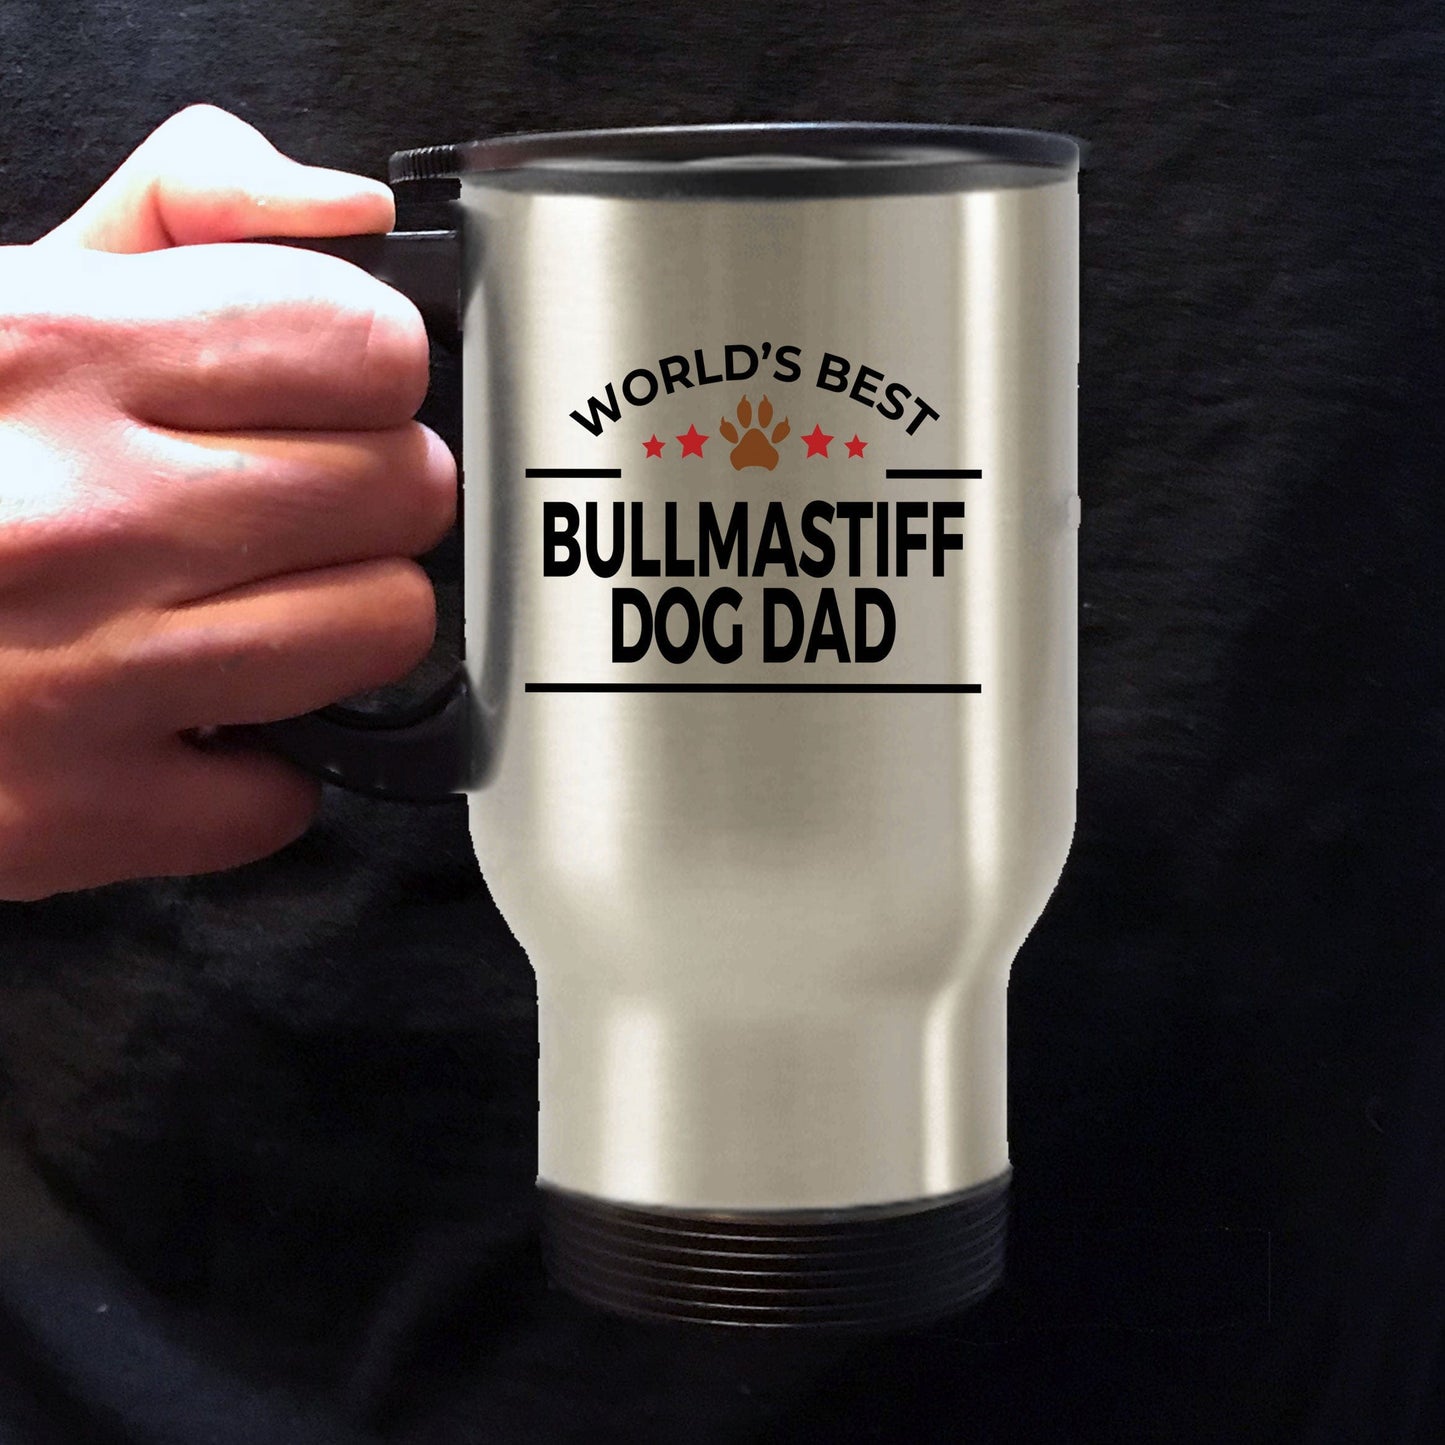 Bullmastiff Dog Dad Travel Coffee Mug